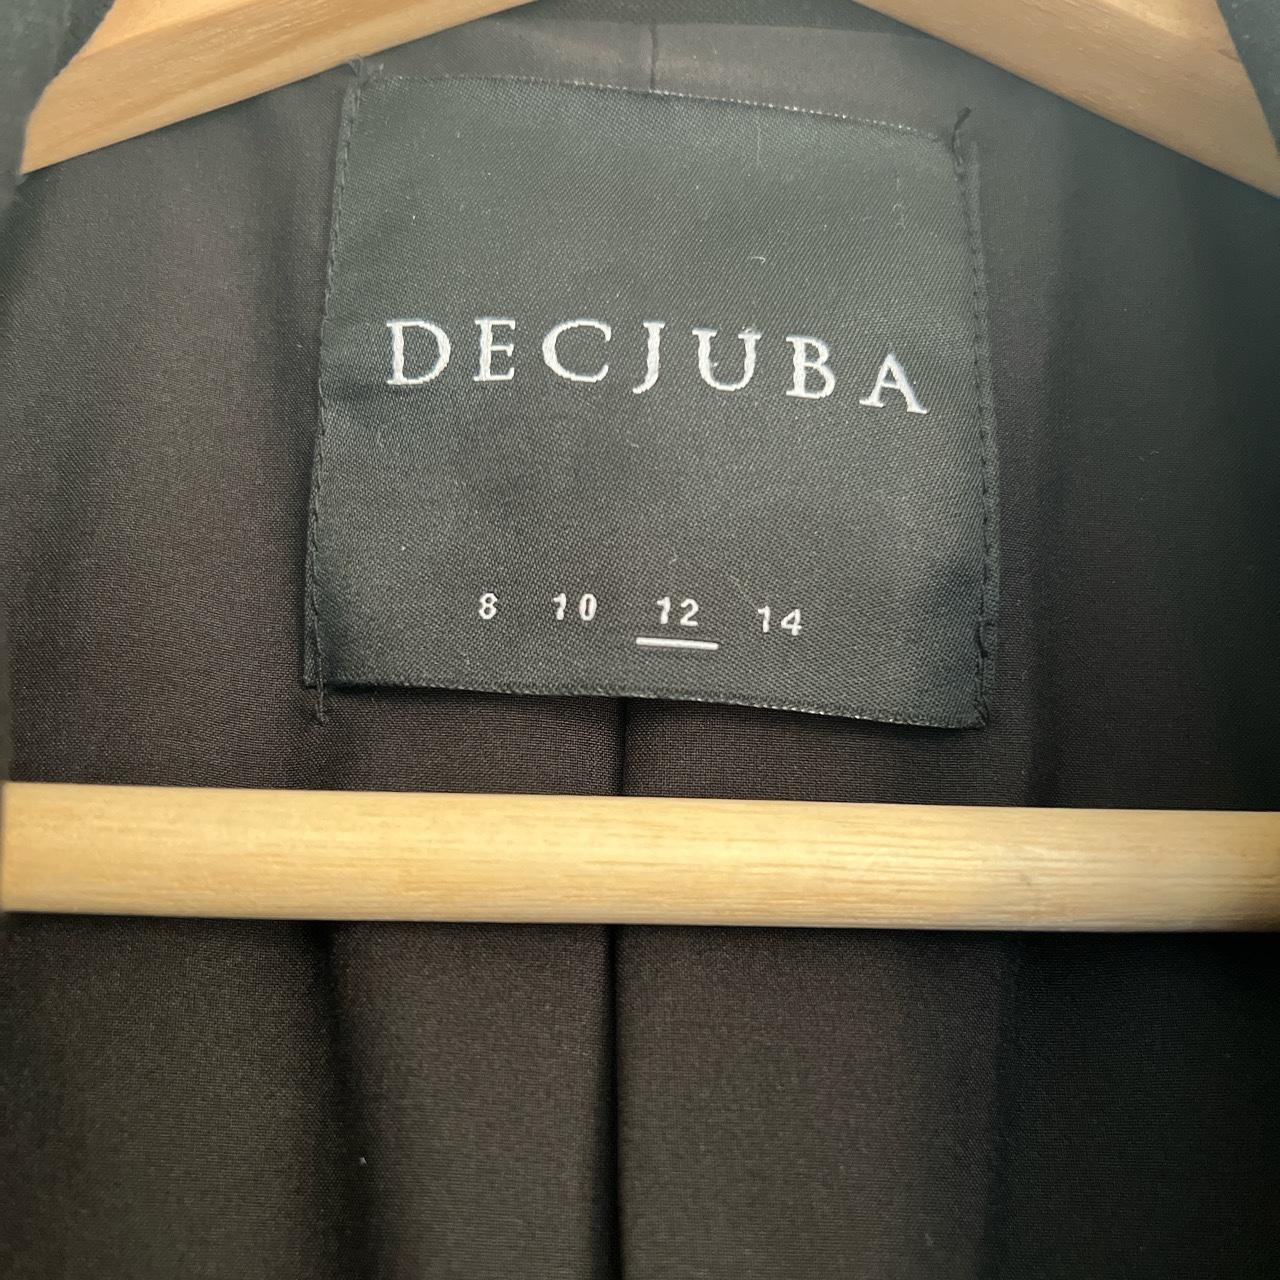 Decjuba blazer Like new, only worn a few times - Depop